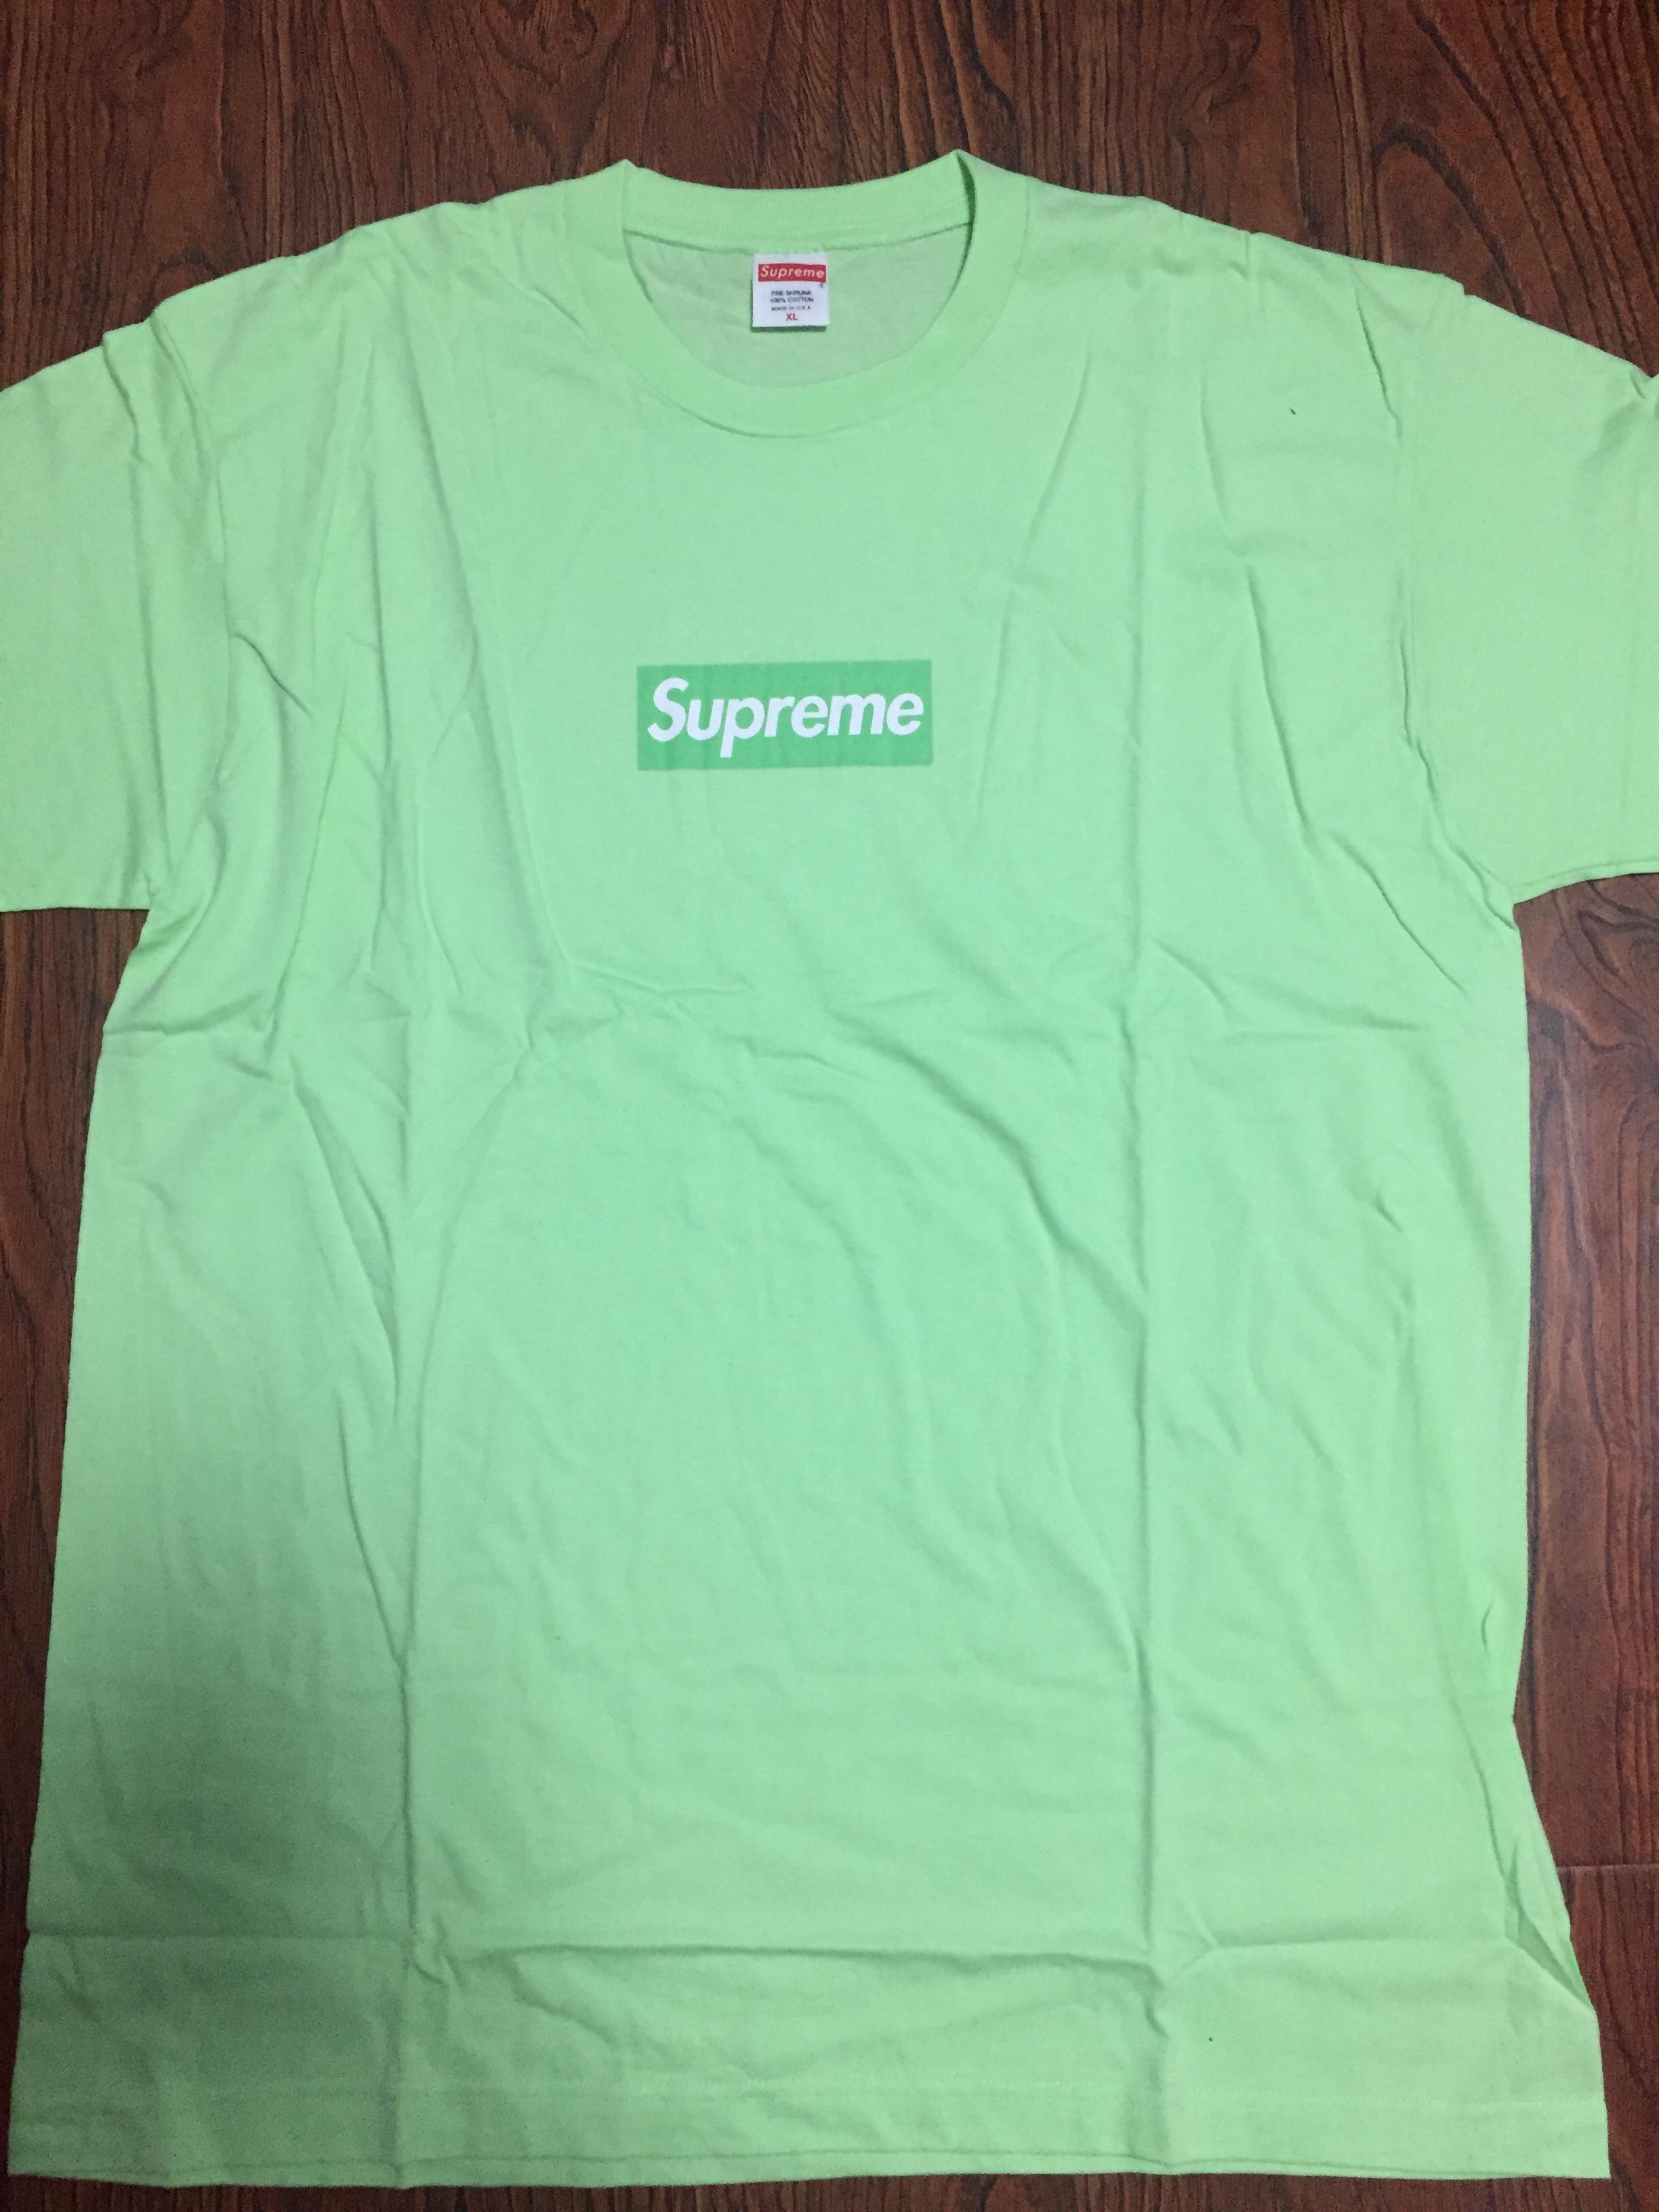 Green Supreme Box Logo - QC] Supreme Green Apple Box Logo T-Shirt from TrendyClub : FashionReps